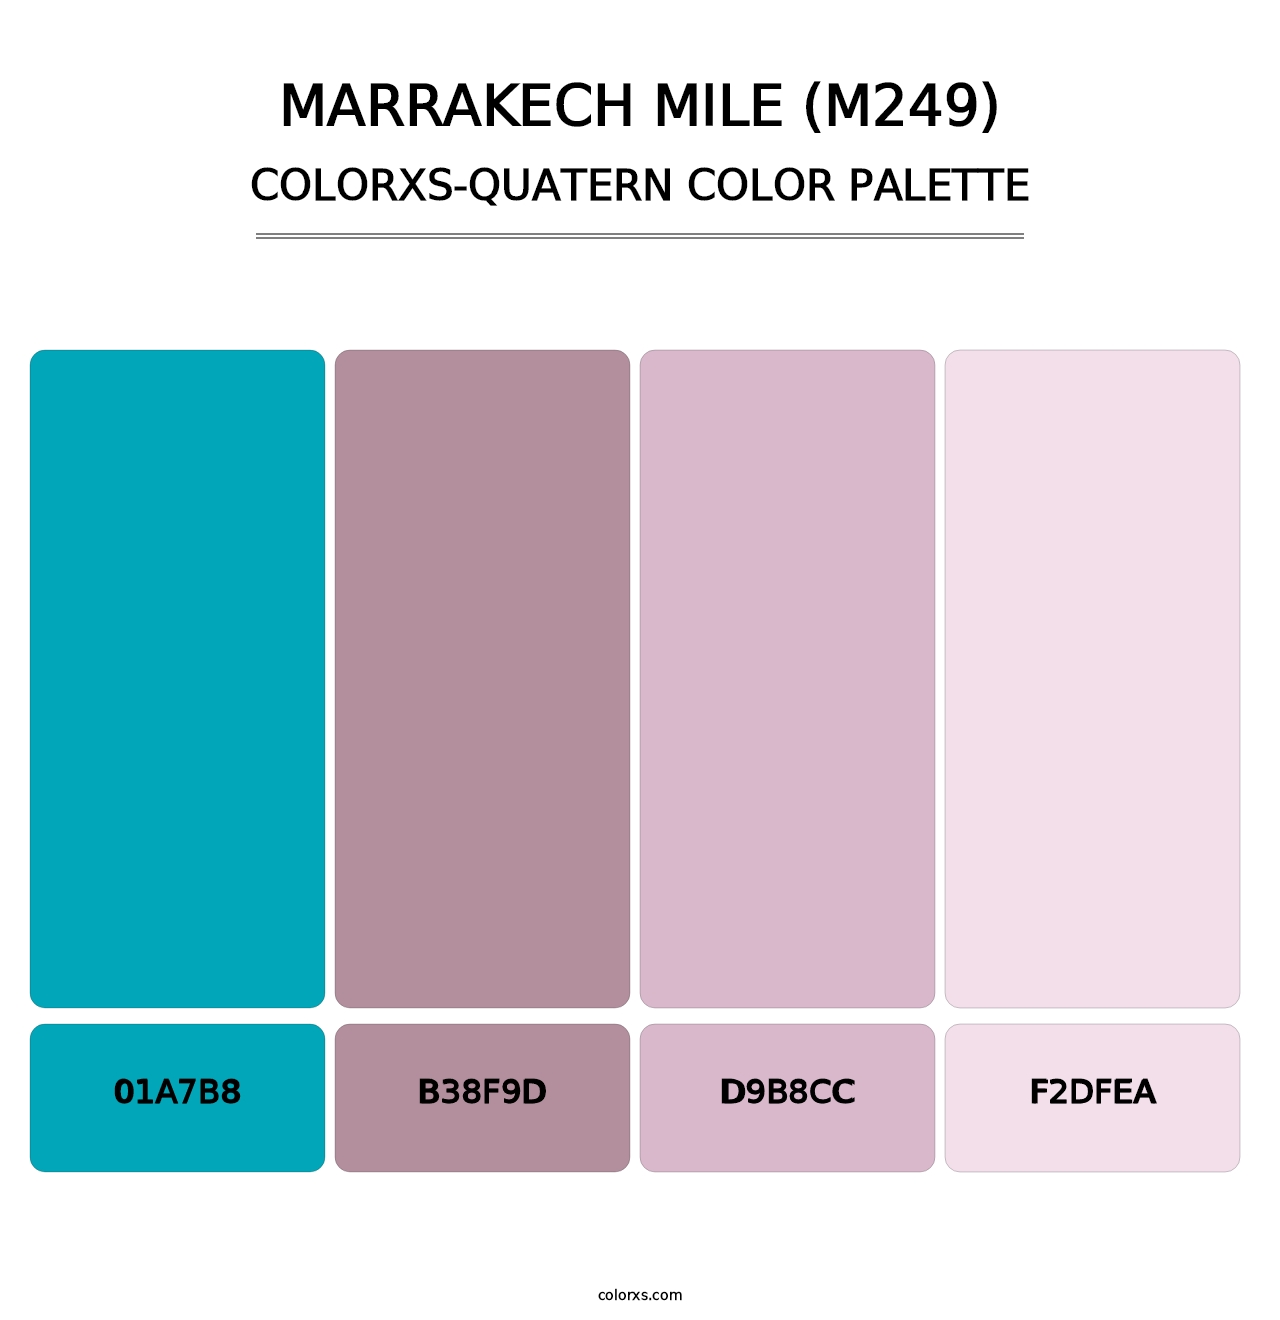 Marrakech Mile (M249) - Colorxs Quatern Palette